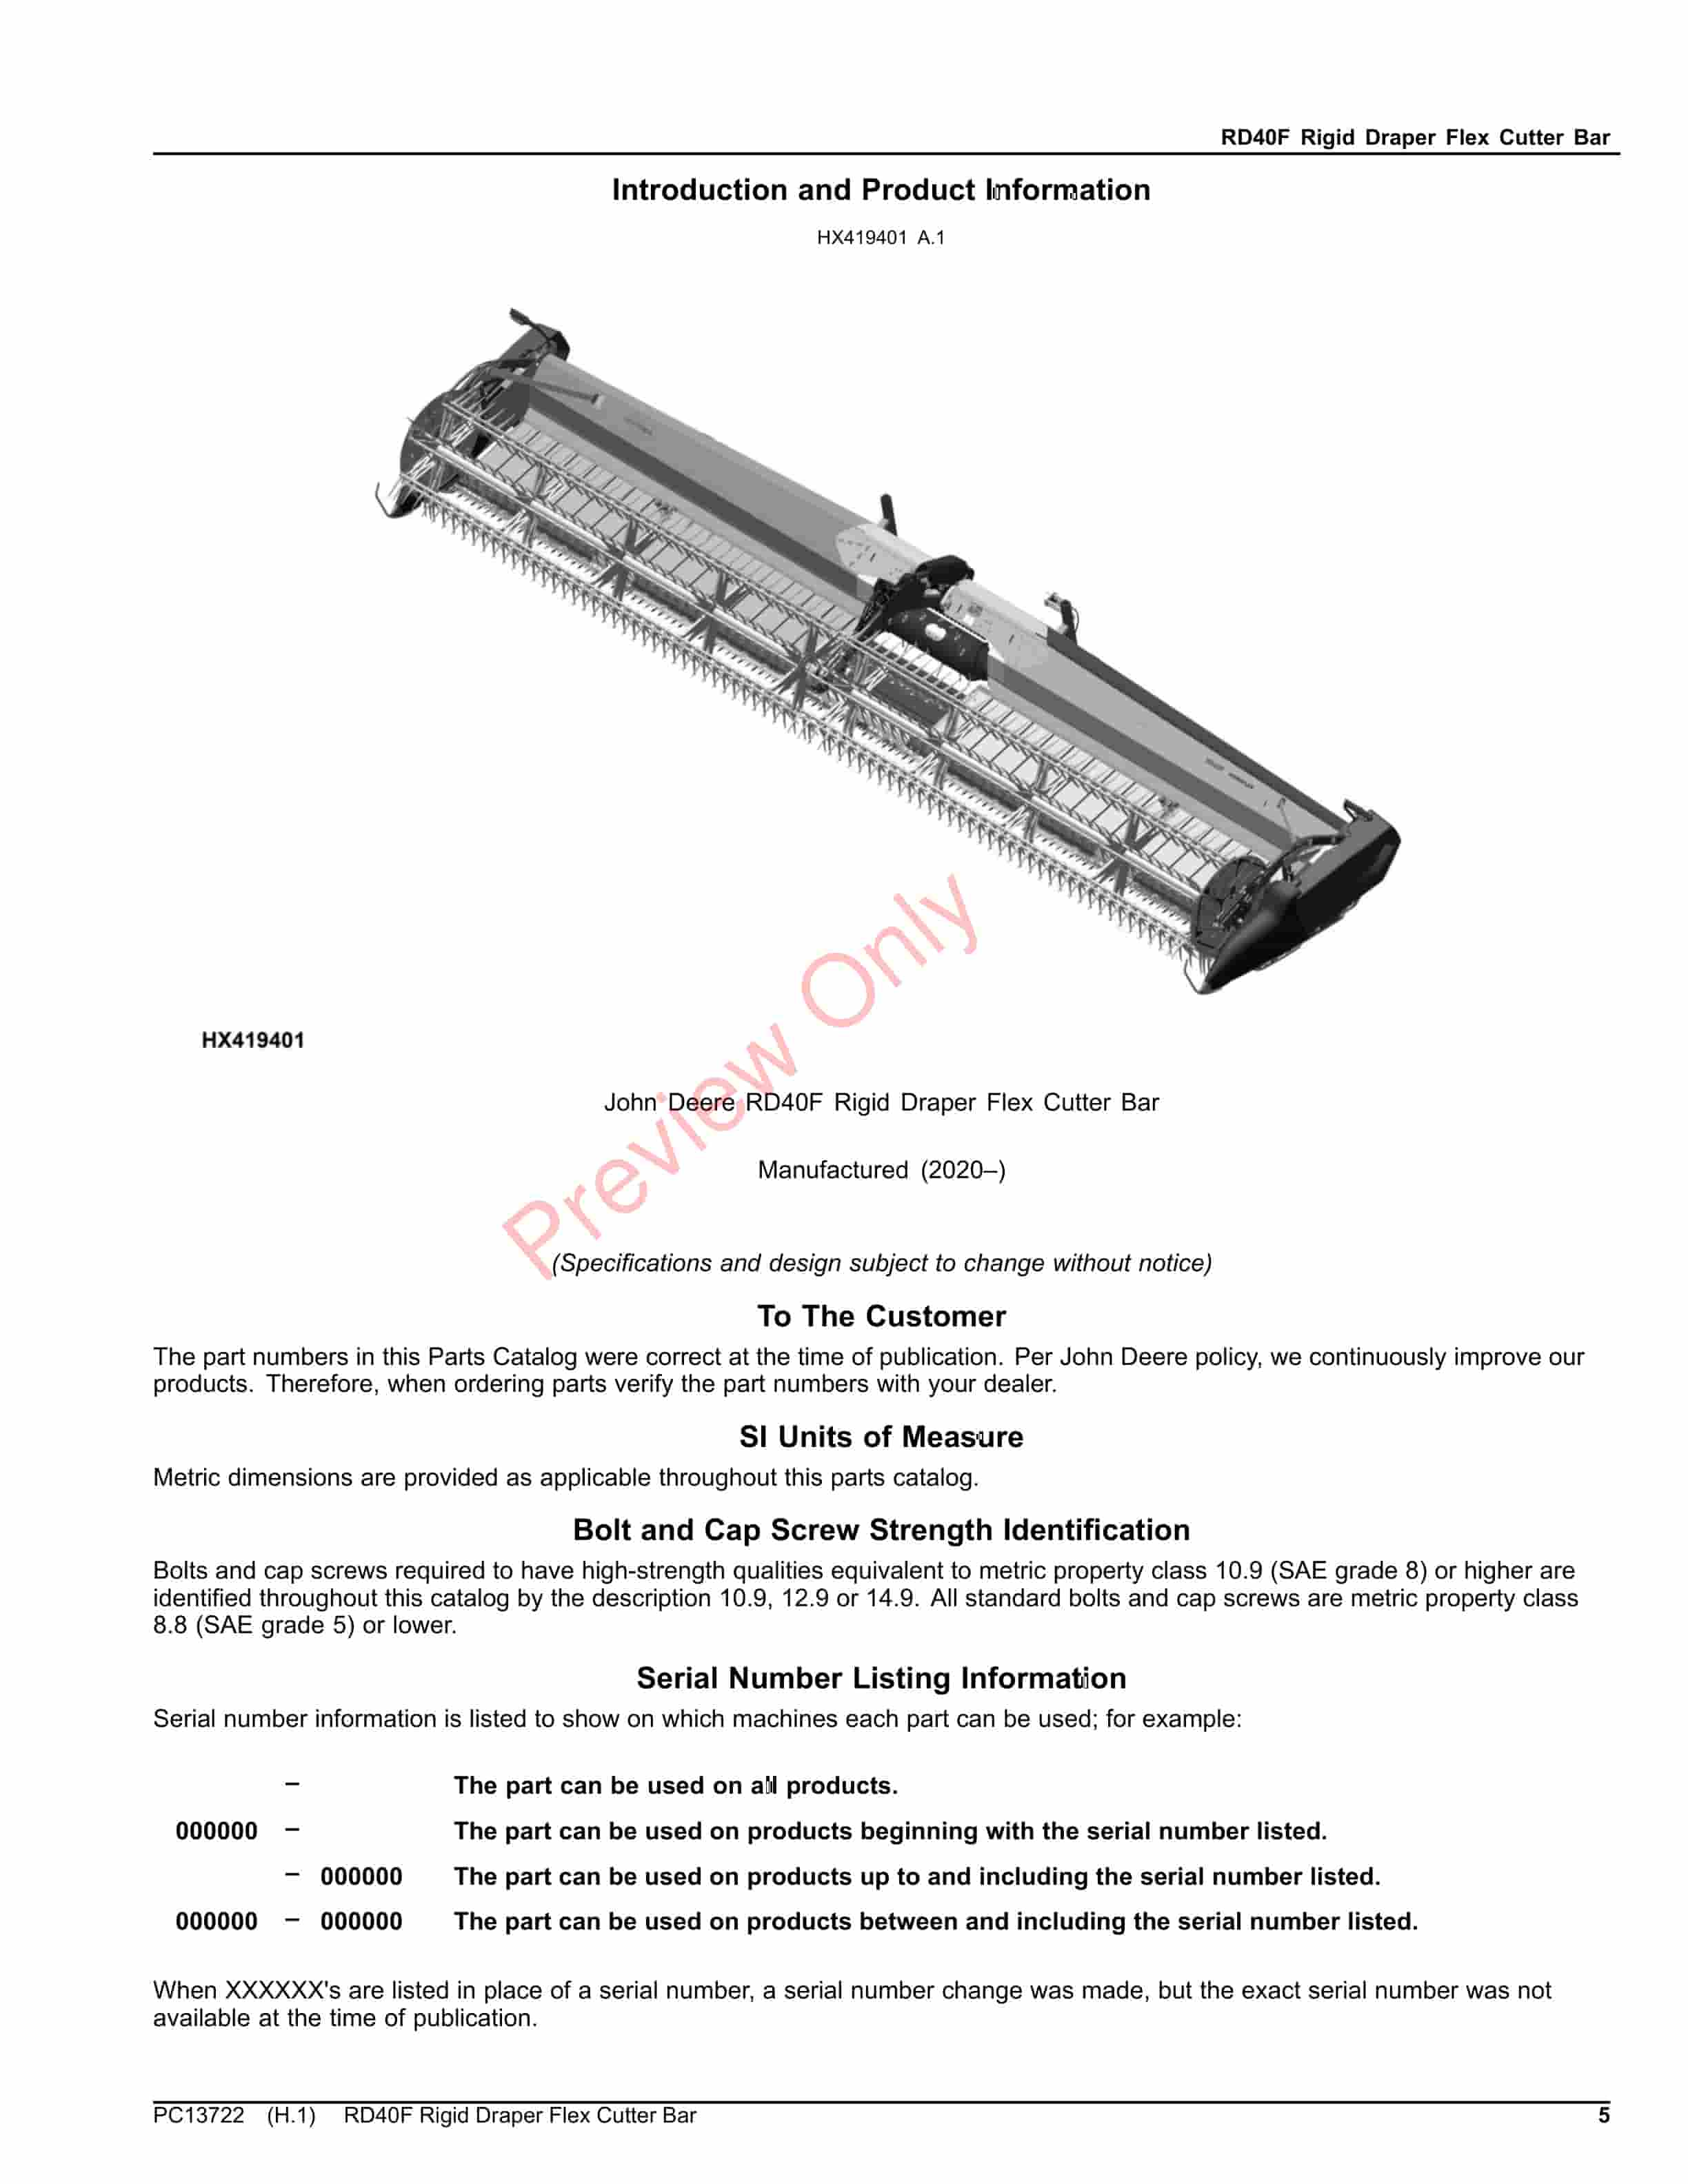 John Deere RD40F Rigid Draper Flex Cutter Bar Parts Catalog PC13722 02NOV23-5